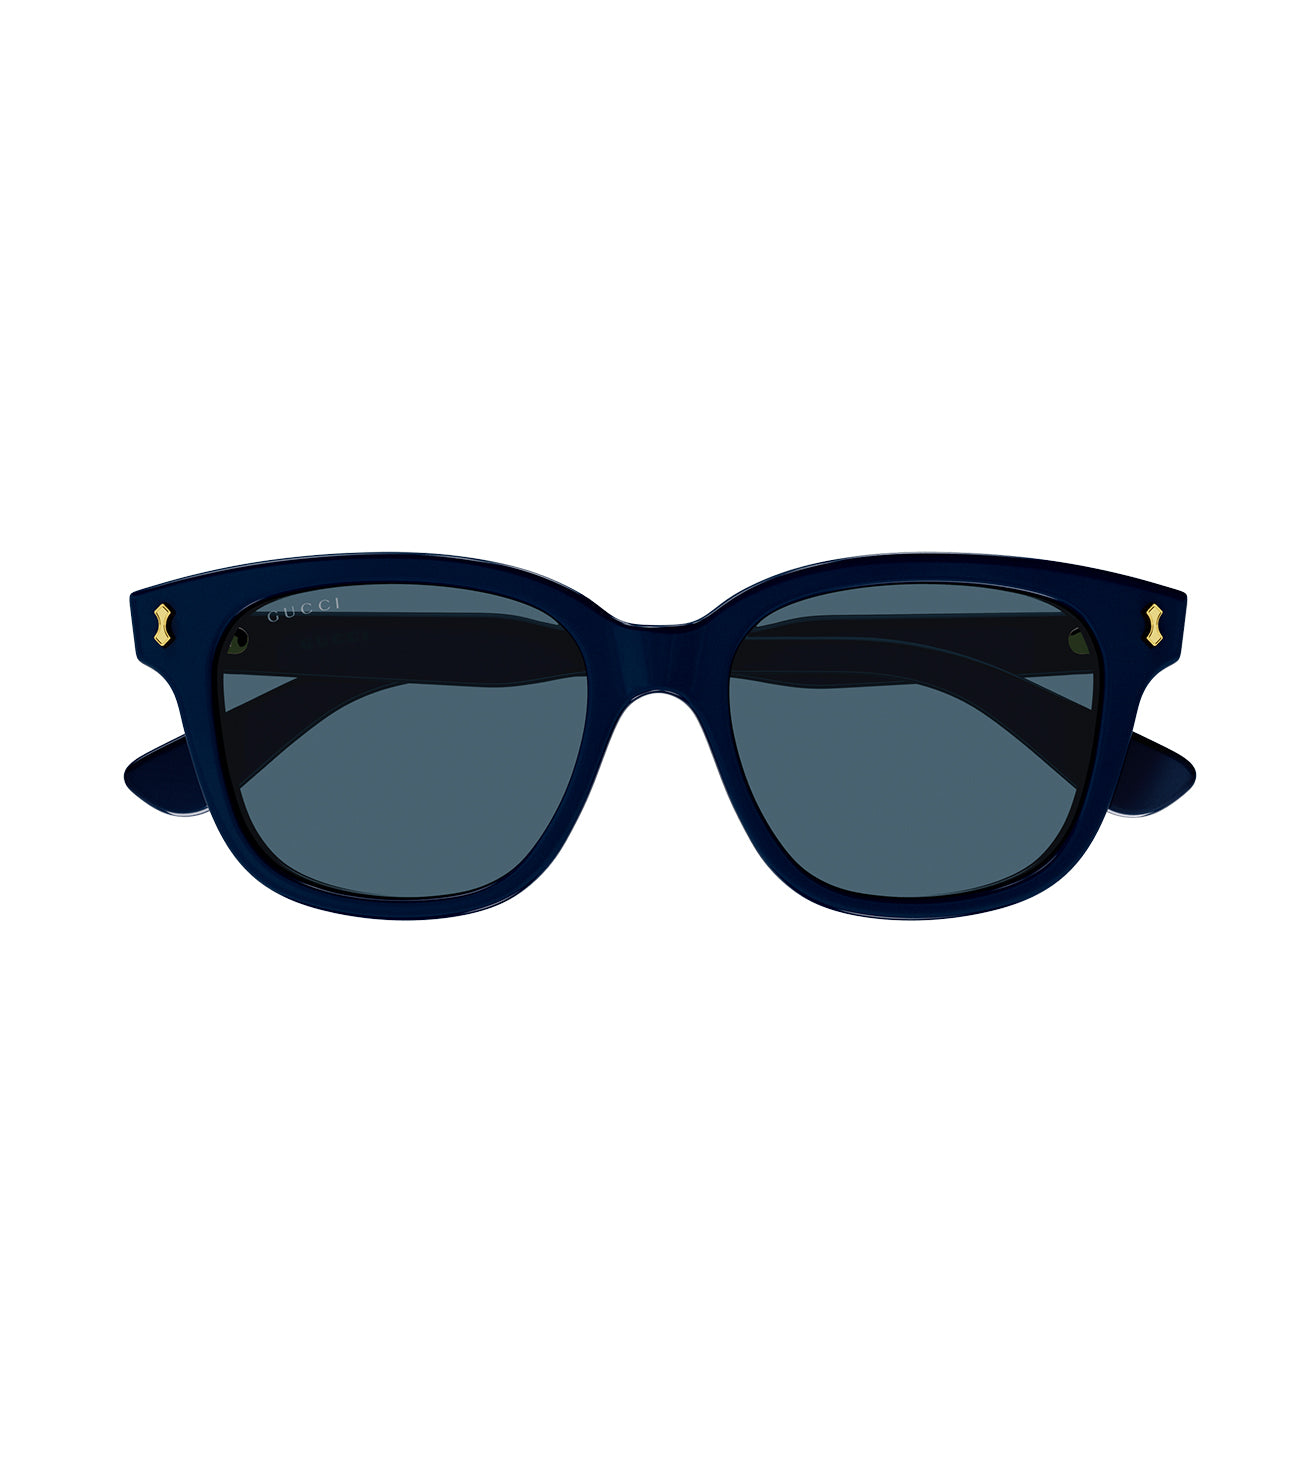 Gucci Men's Blue Square Sunglasses